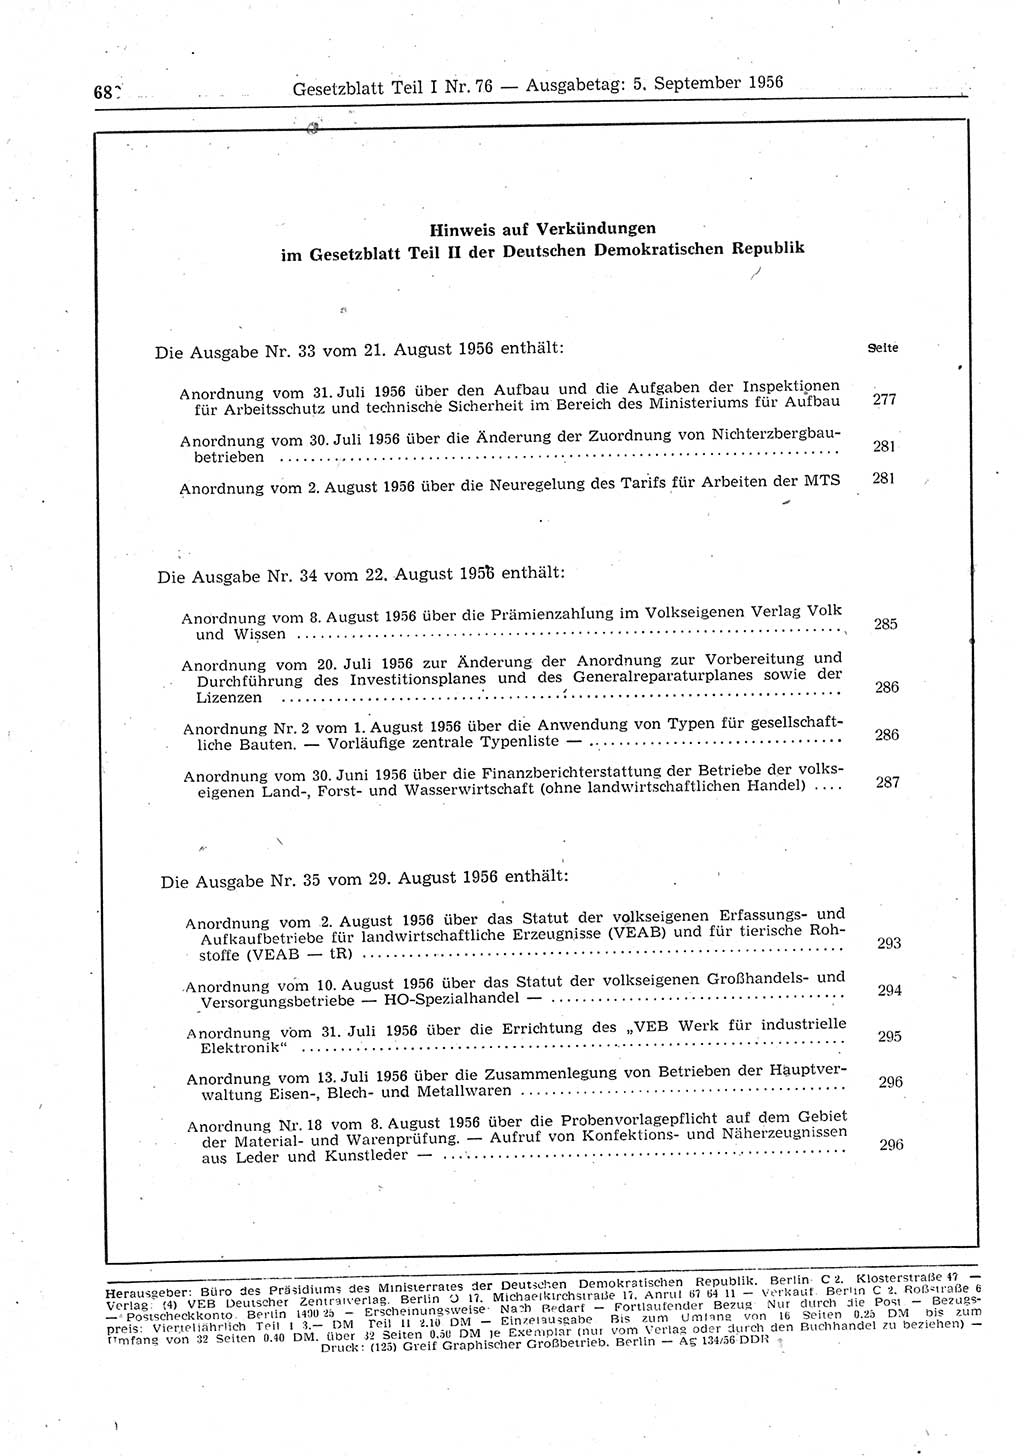 Gesetzblatt (GBl.) der Deutschen Demokratischen Republik (DDR) Teil Ⅰ 1956, Seite 680 (GBl. DDR Ⅰ 1956, S. 680)